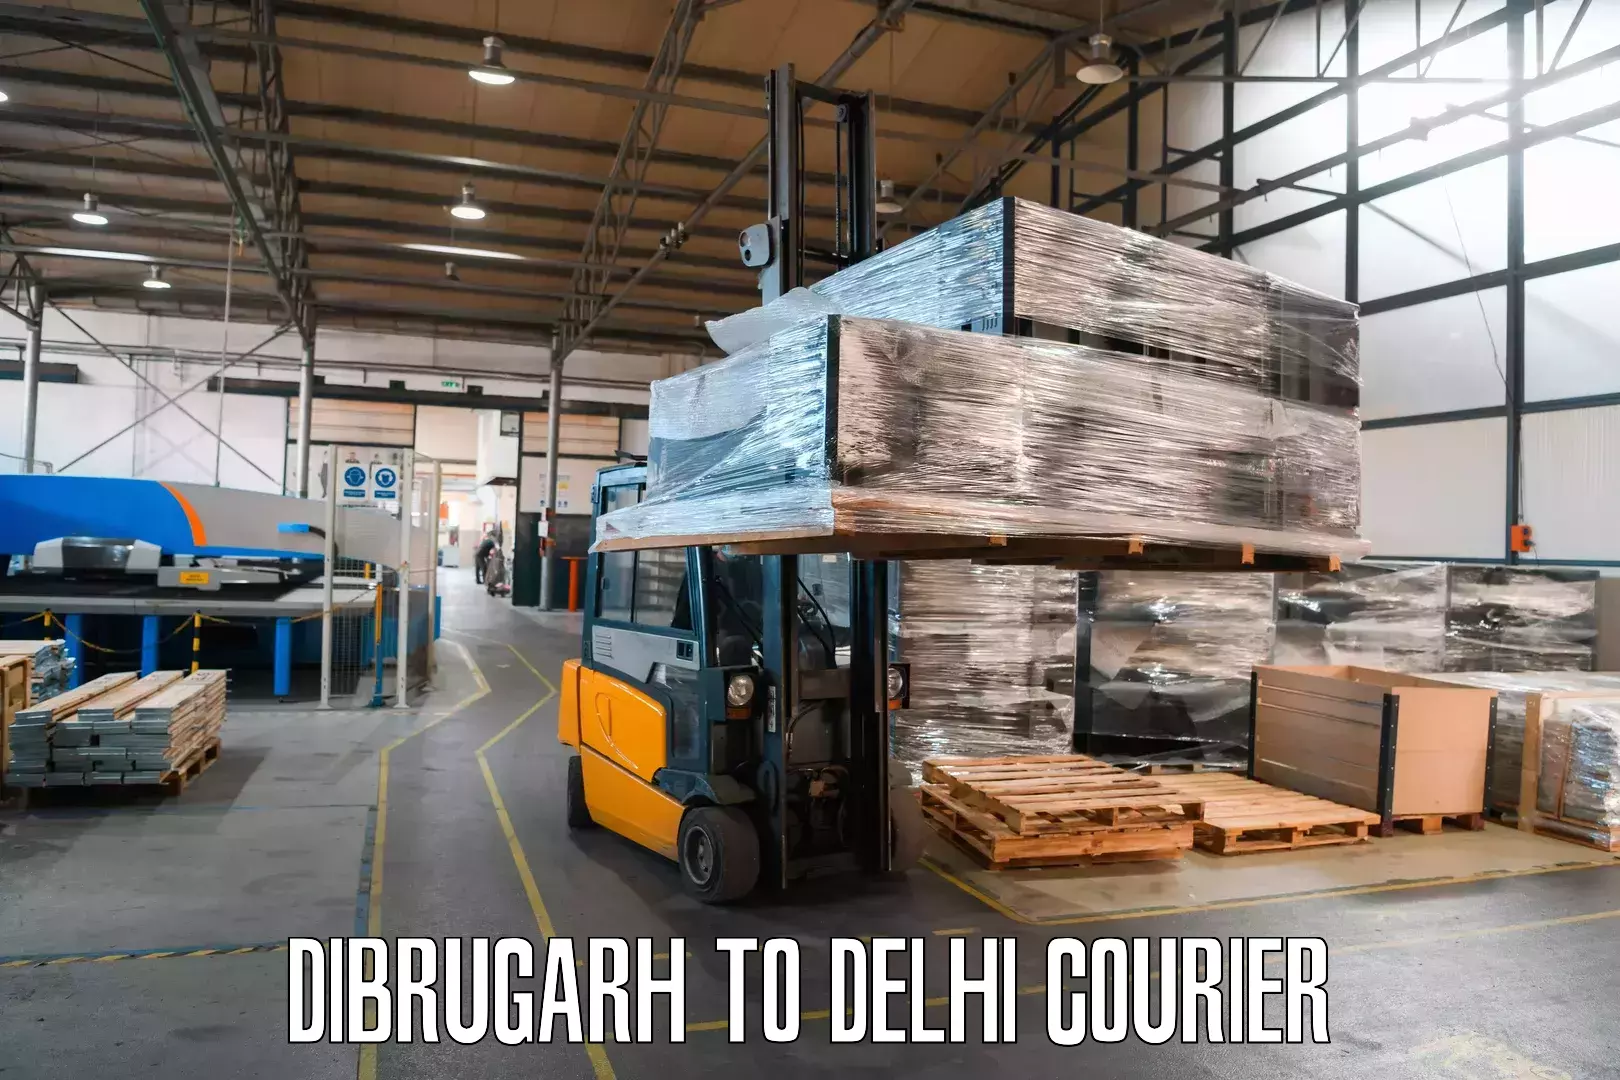 Local delivery service Dibrugarh to Delhi